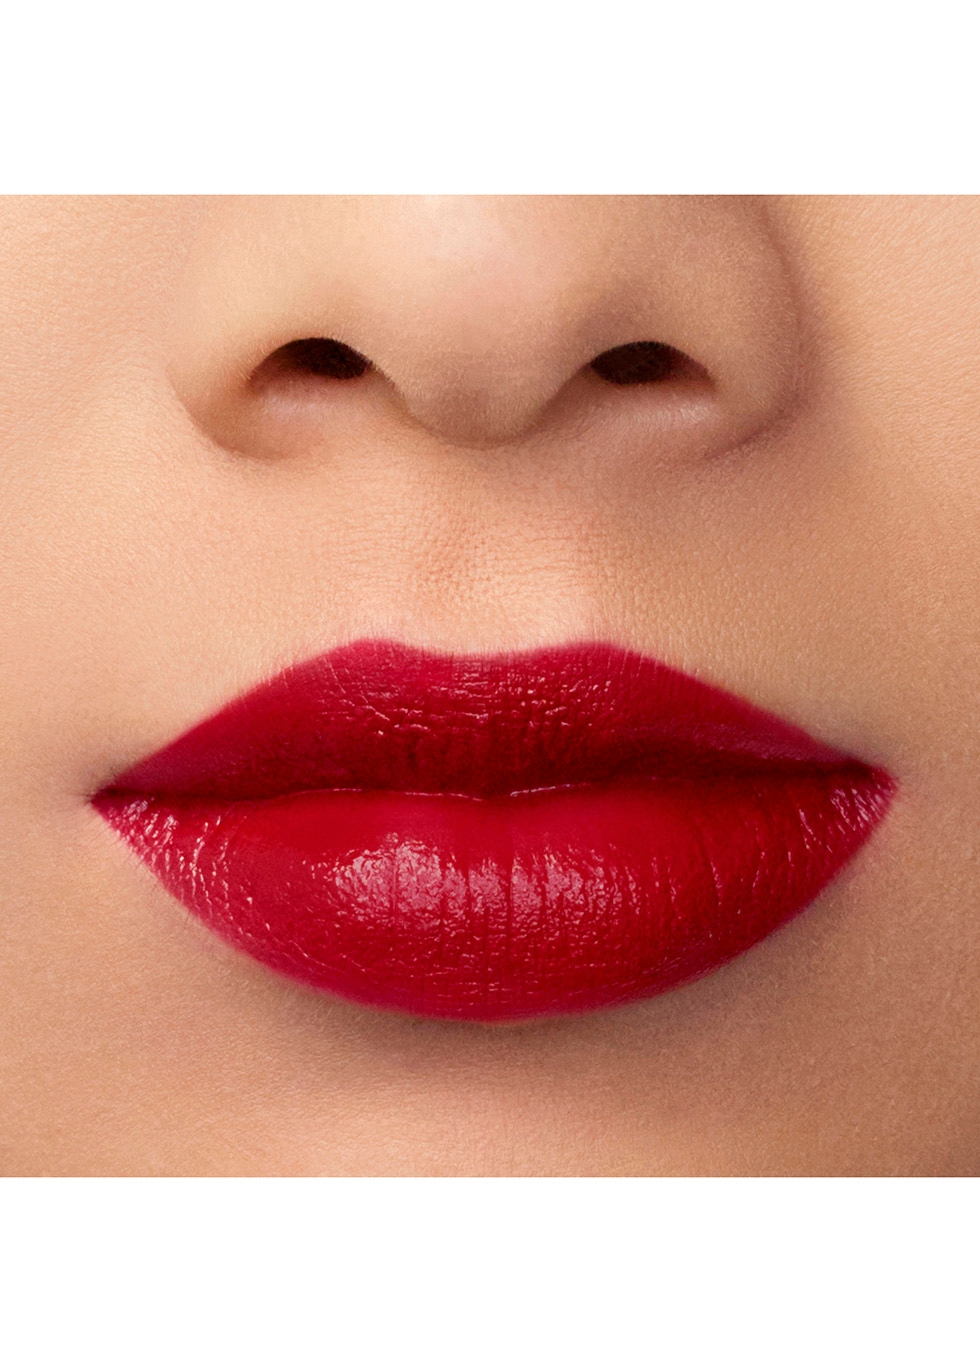 Armani Beauty Rouge D' Armani Lipstick 